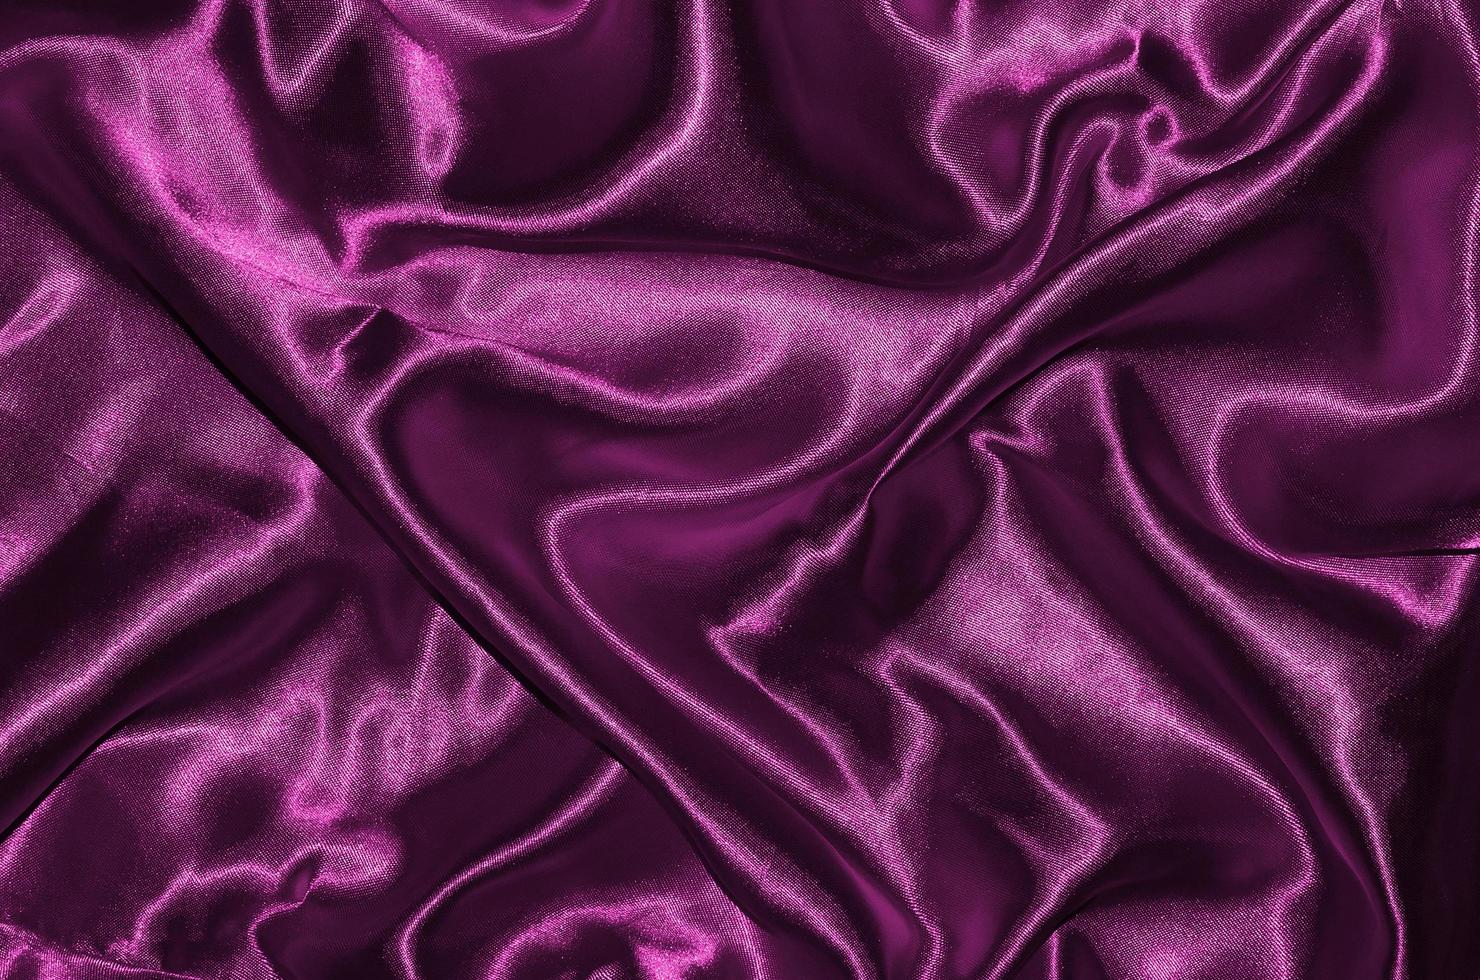 fond et papier peint en tissu rose et textile à rayures photo